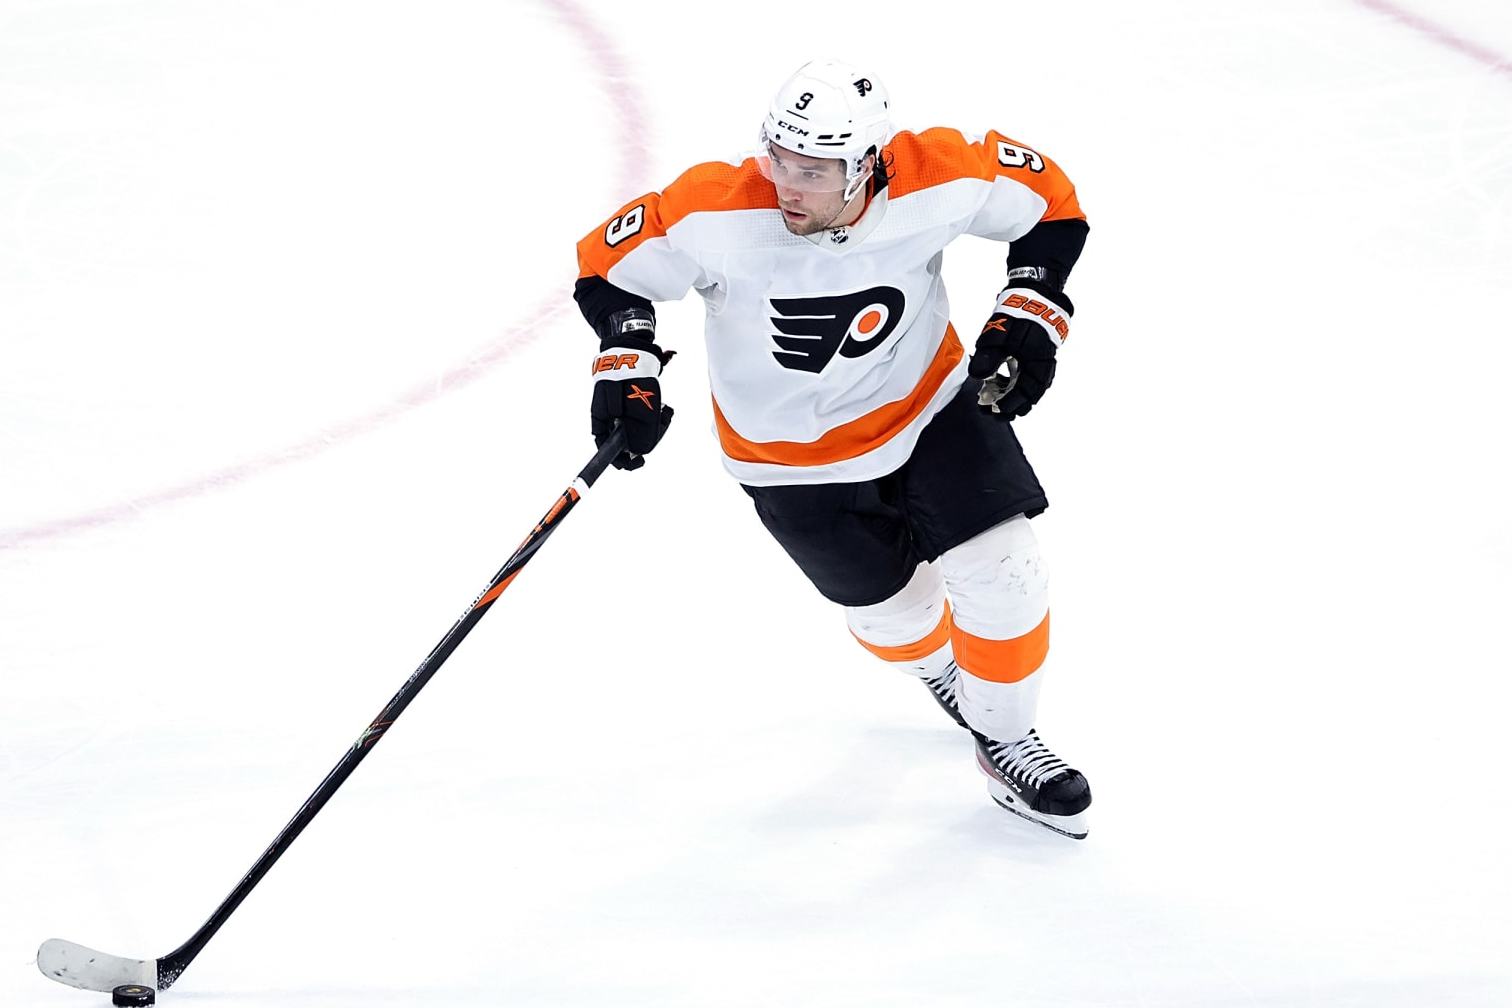 Bill Meltzer on X: Flyers defenseman Ivan Provorov has won the